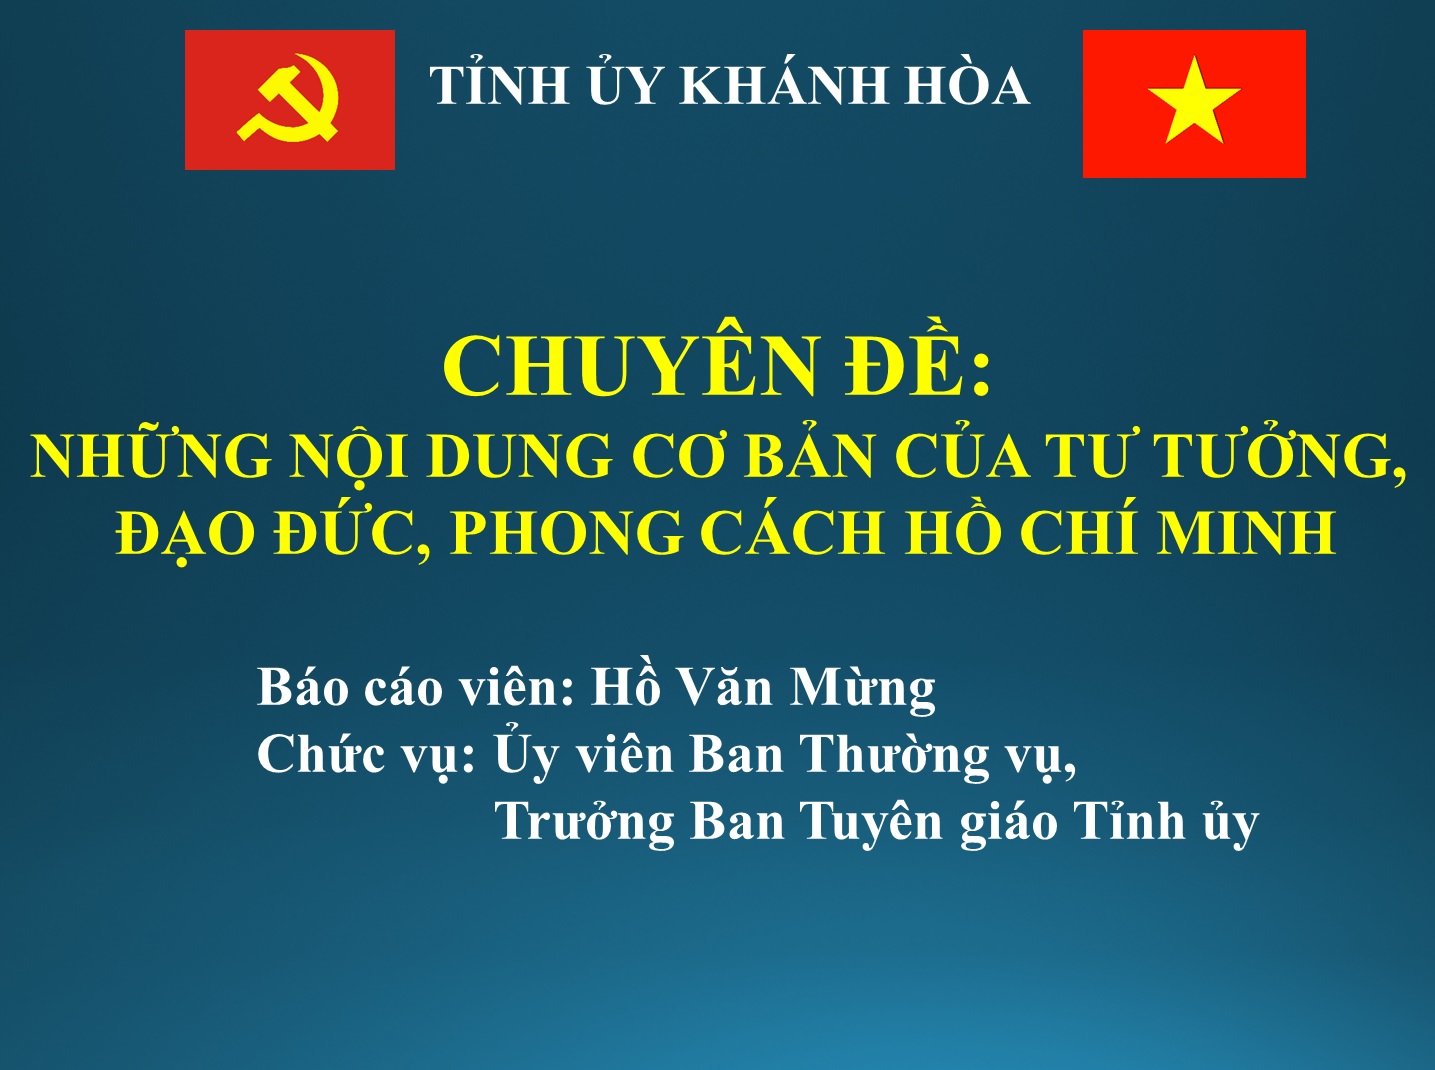 Chuyên đề Những nội dung cơ bản của tư tưởng, đạo đức, phong cách Hồ Chí Minh.